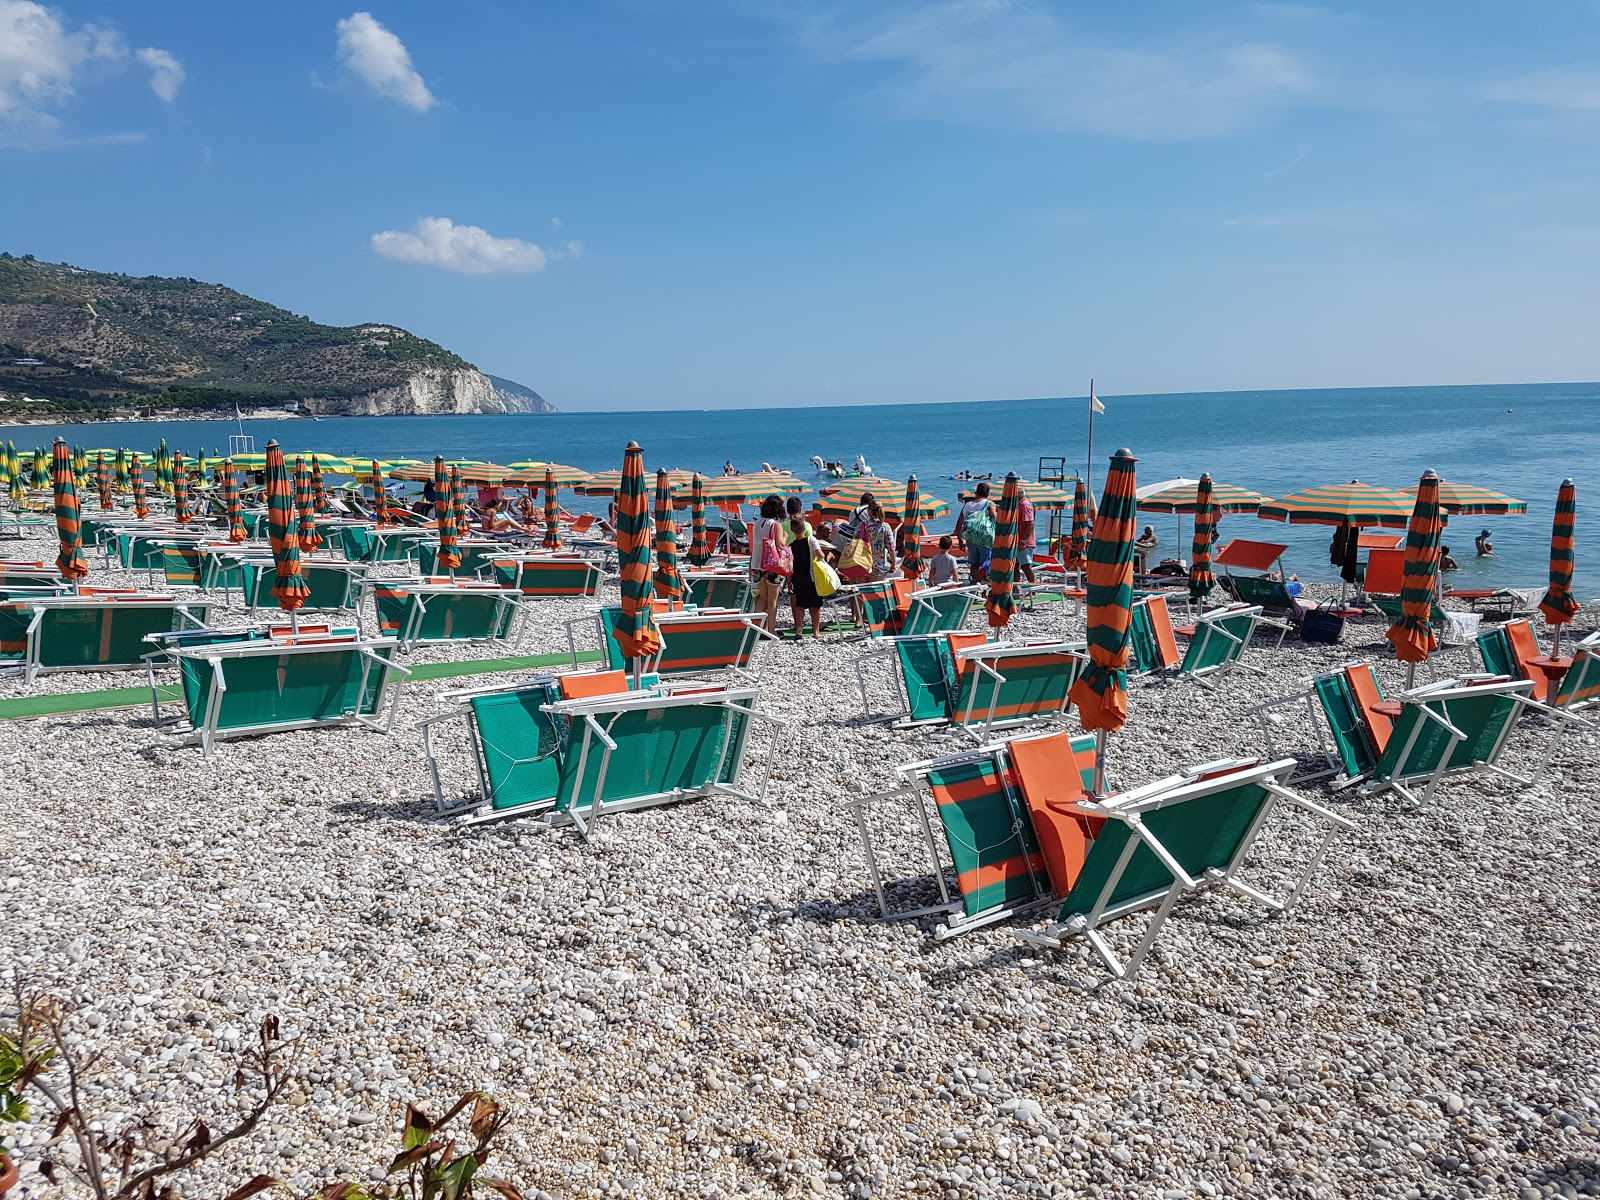 Foto af Spiaggia di Piana di Mattinata - populært sted blandt afslapningskendere